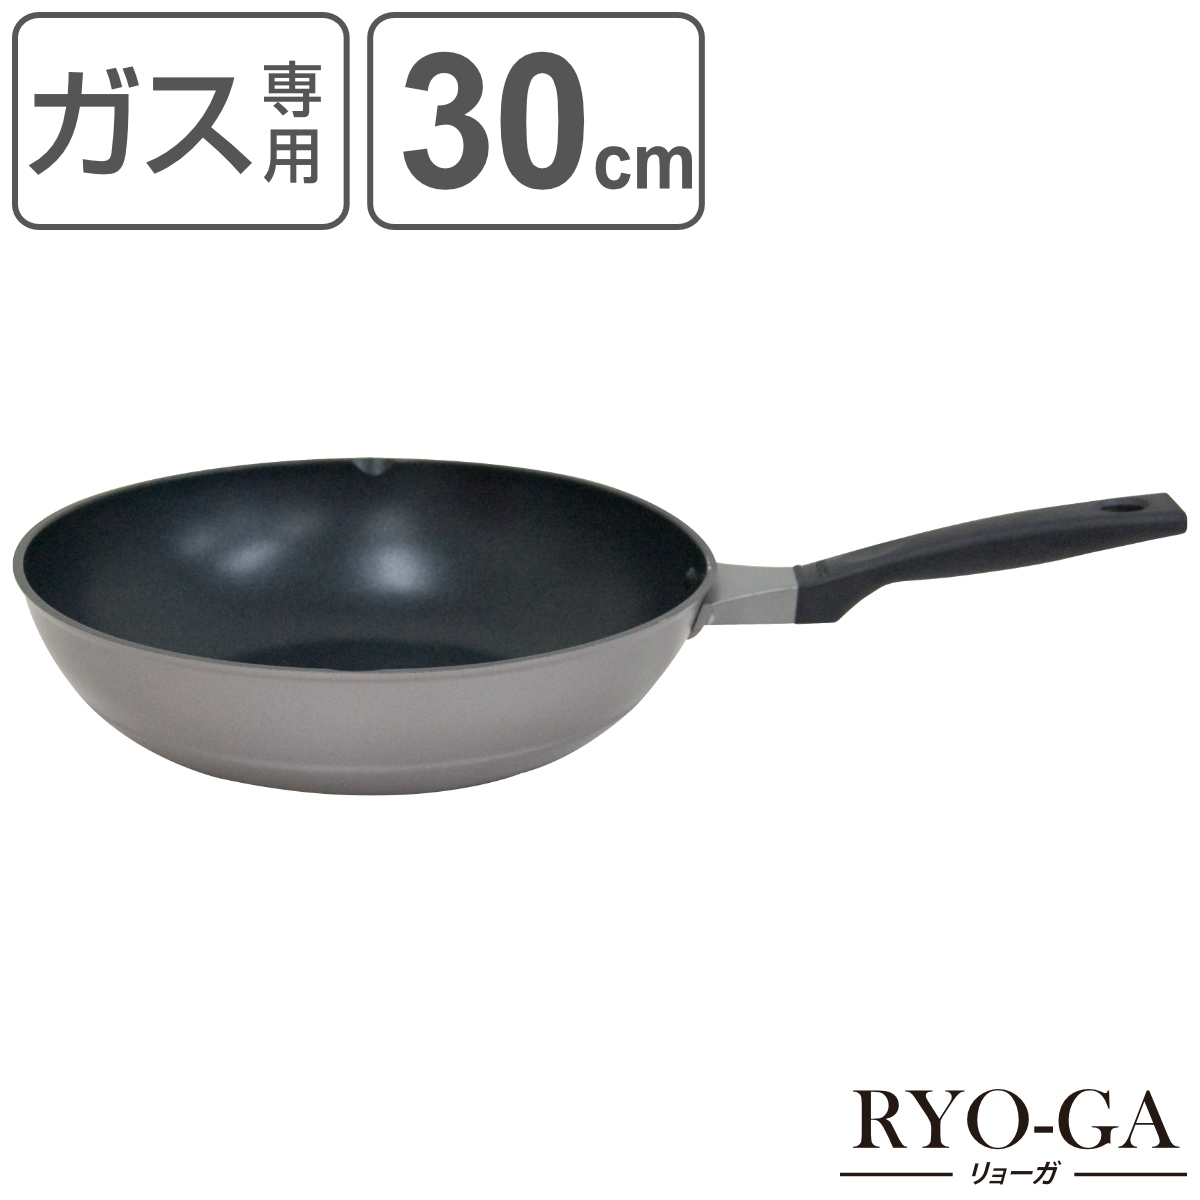 ウルシヤマ金属工業 リョーガ いため鍋 30cm×1個 RYO-GA フライパンの商品画像